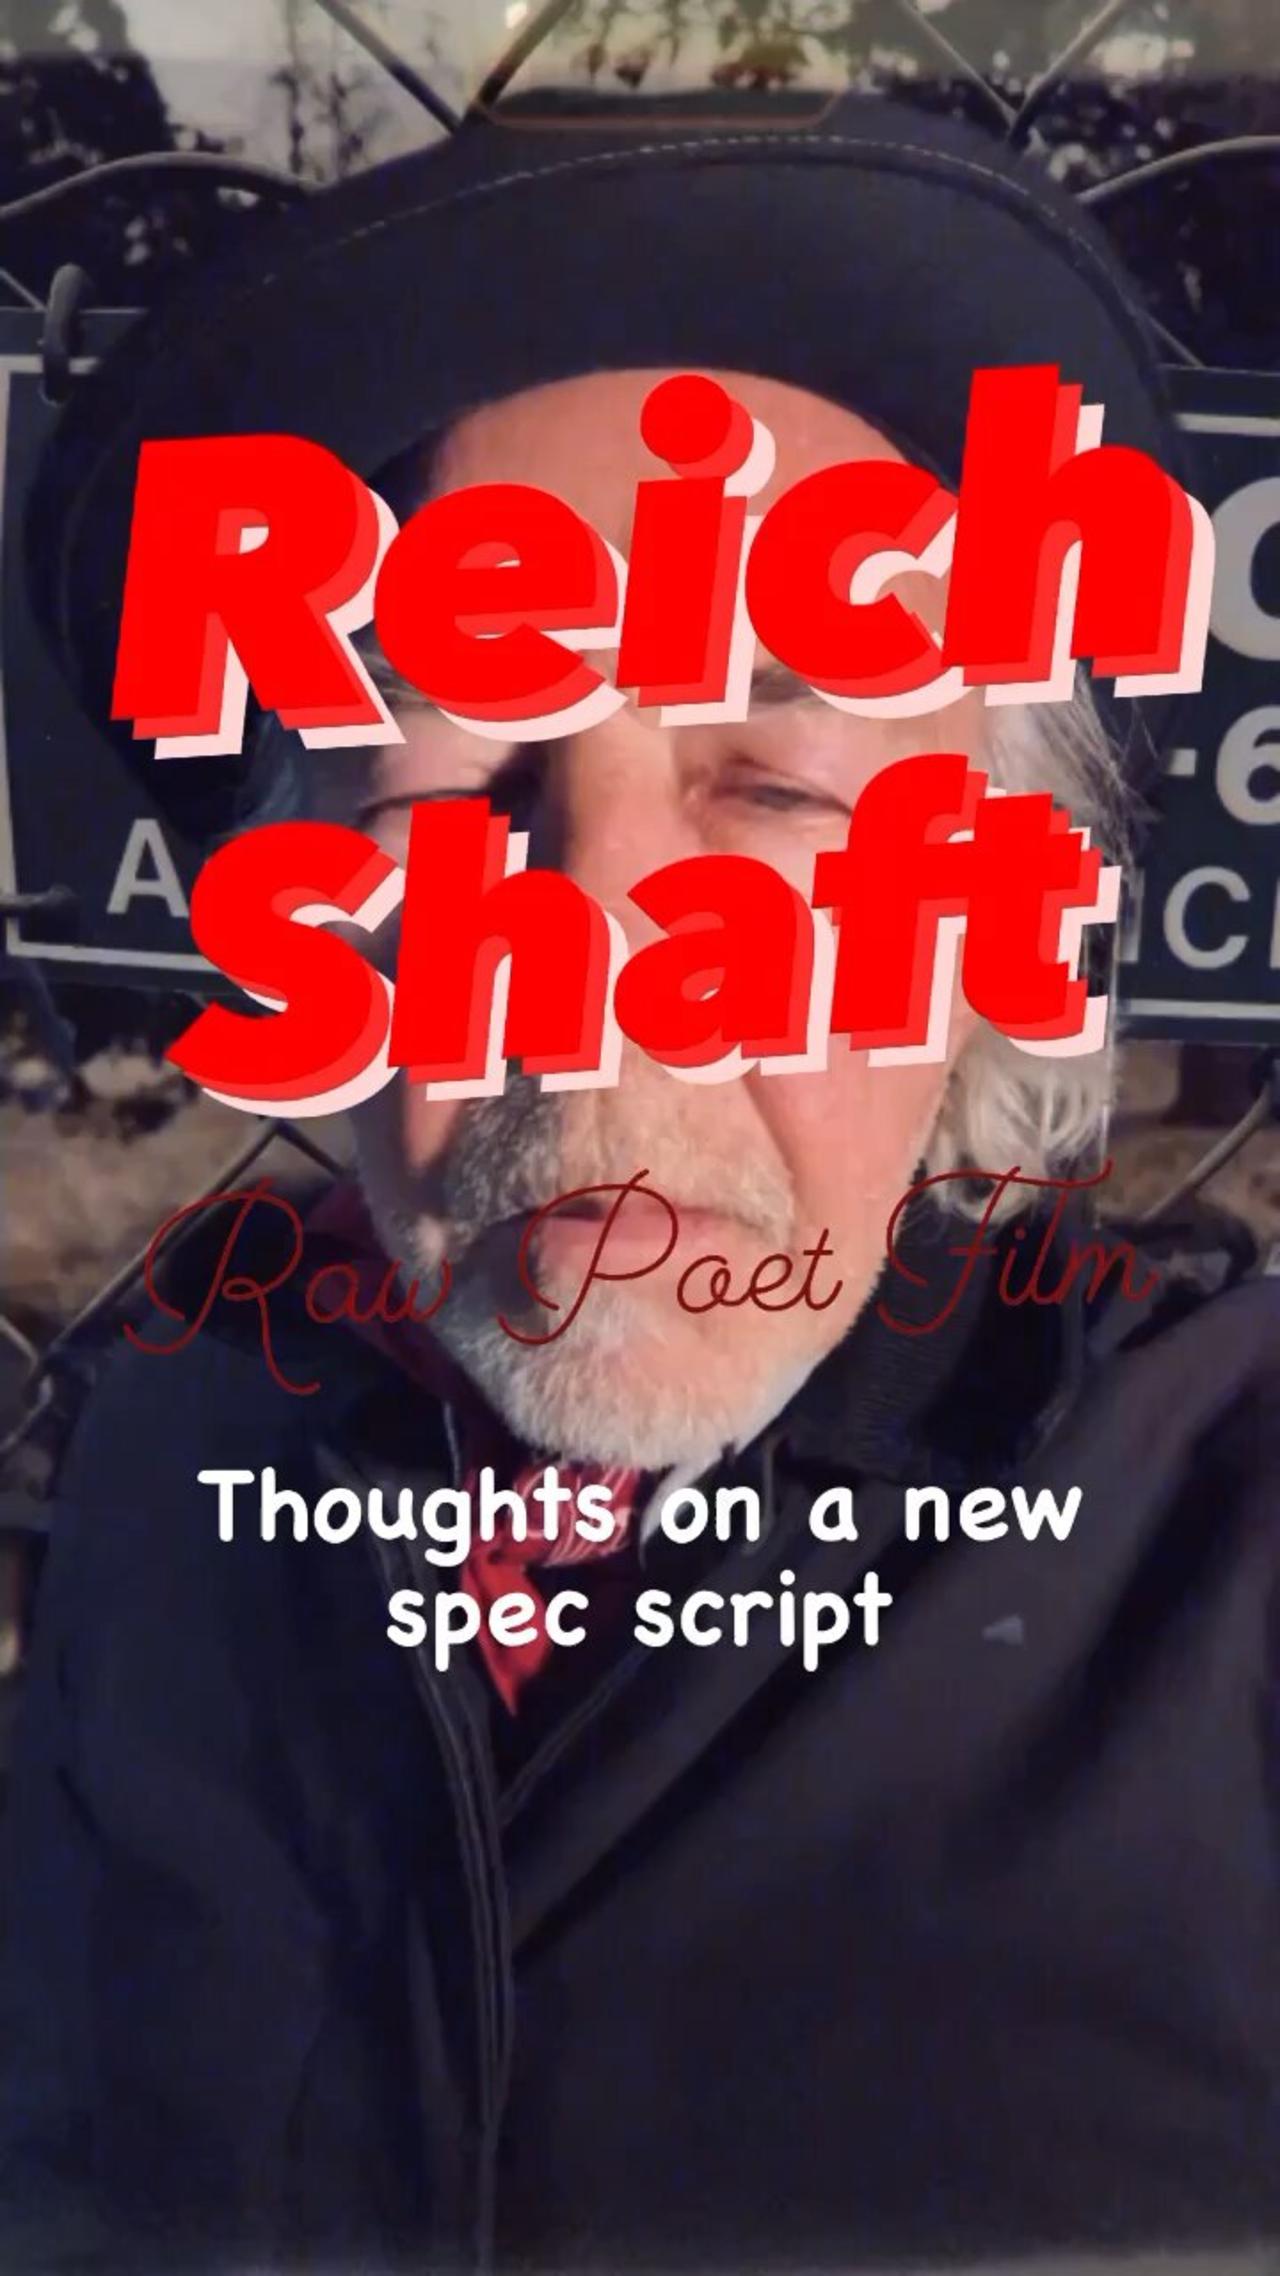 REICH SHAFT SCRIPT